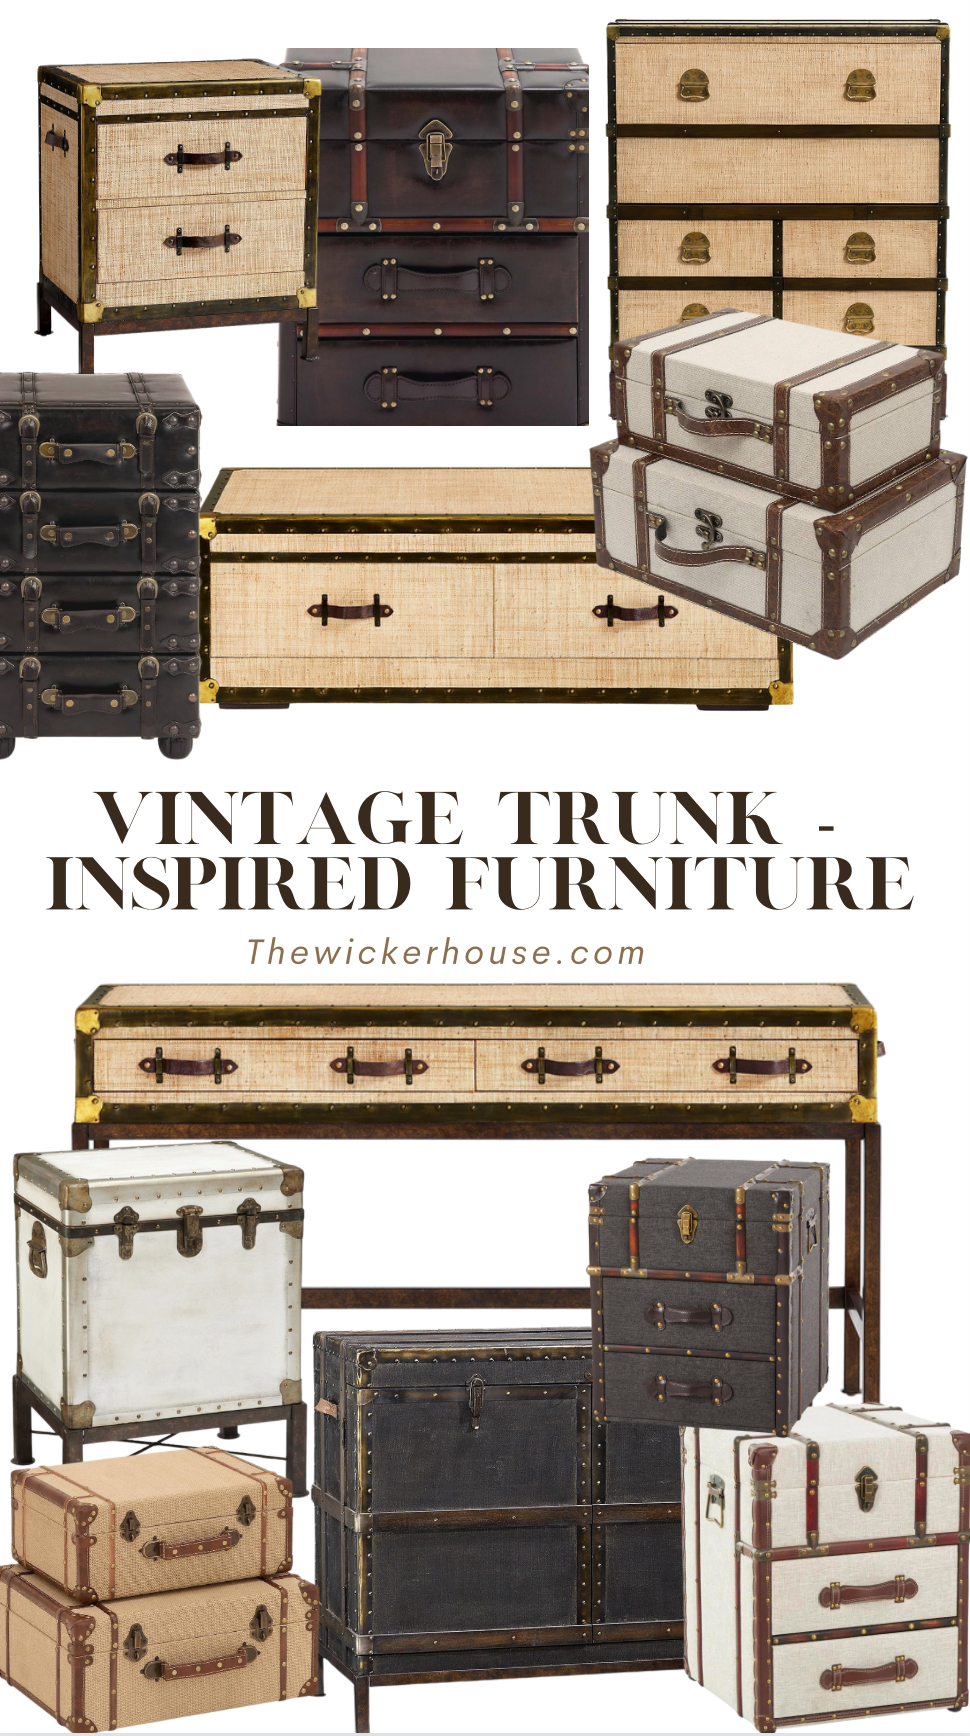 Vintage Trunk - Inspired Furniture